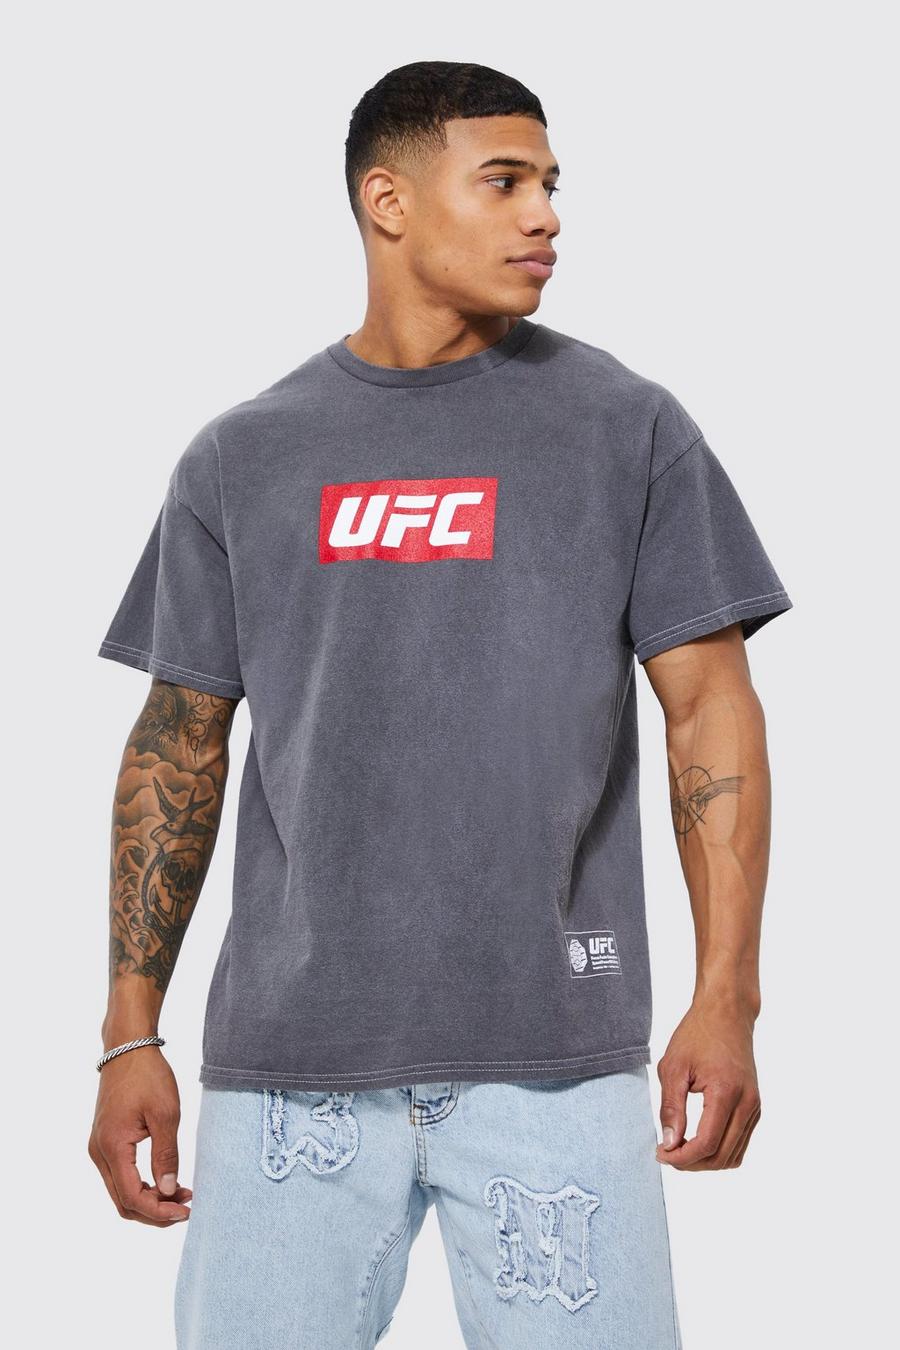 Charcoal grå UFC T-shirt med tvättad effekt